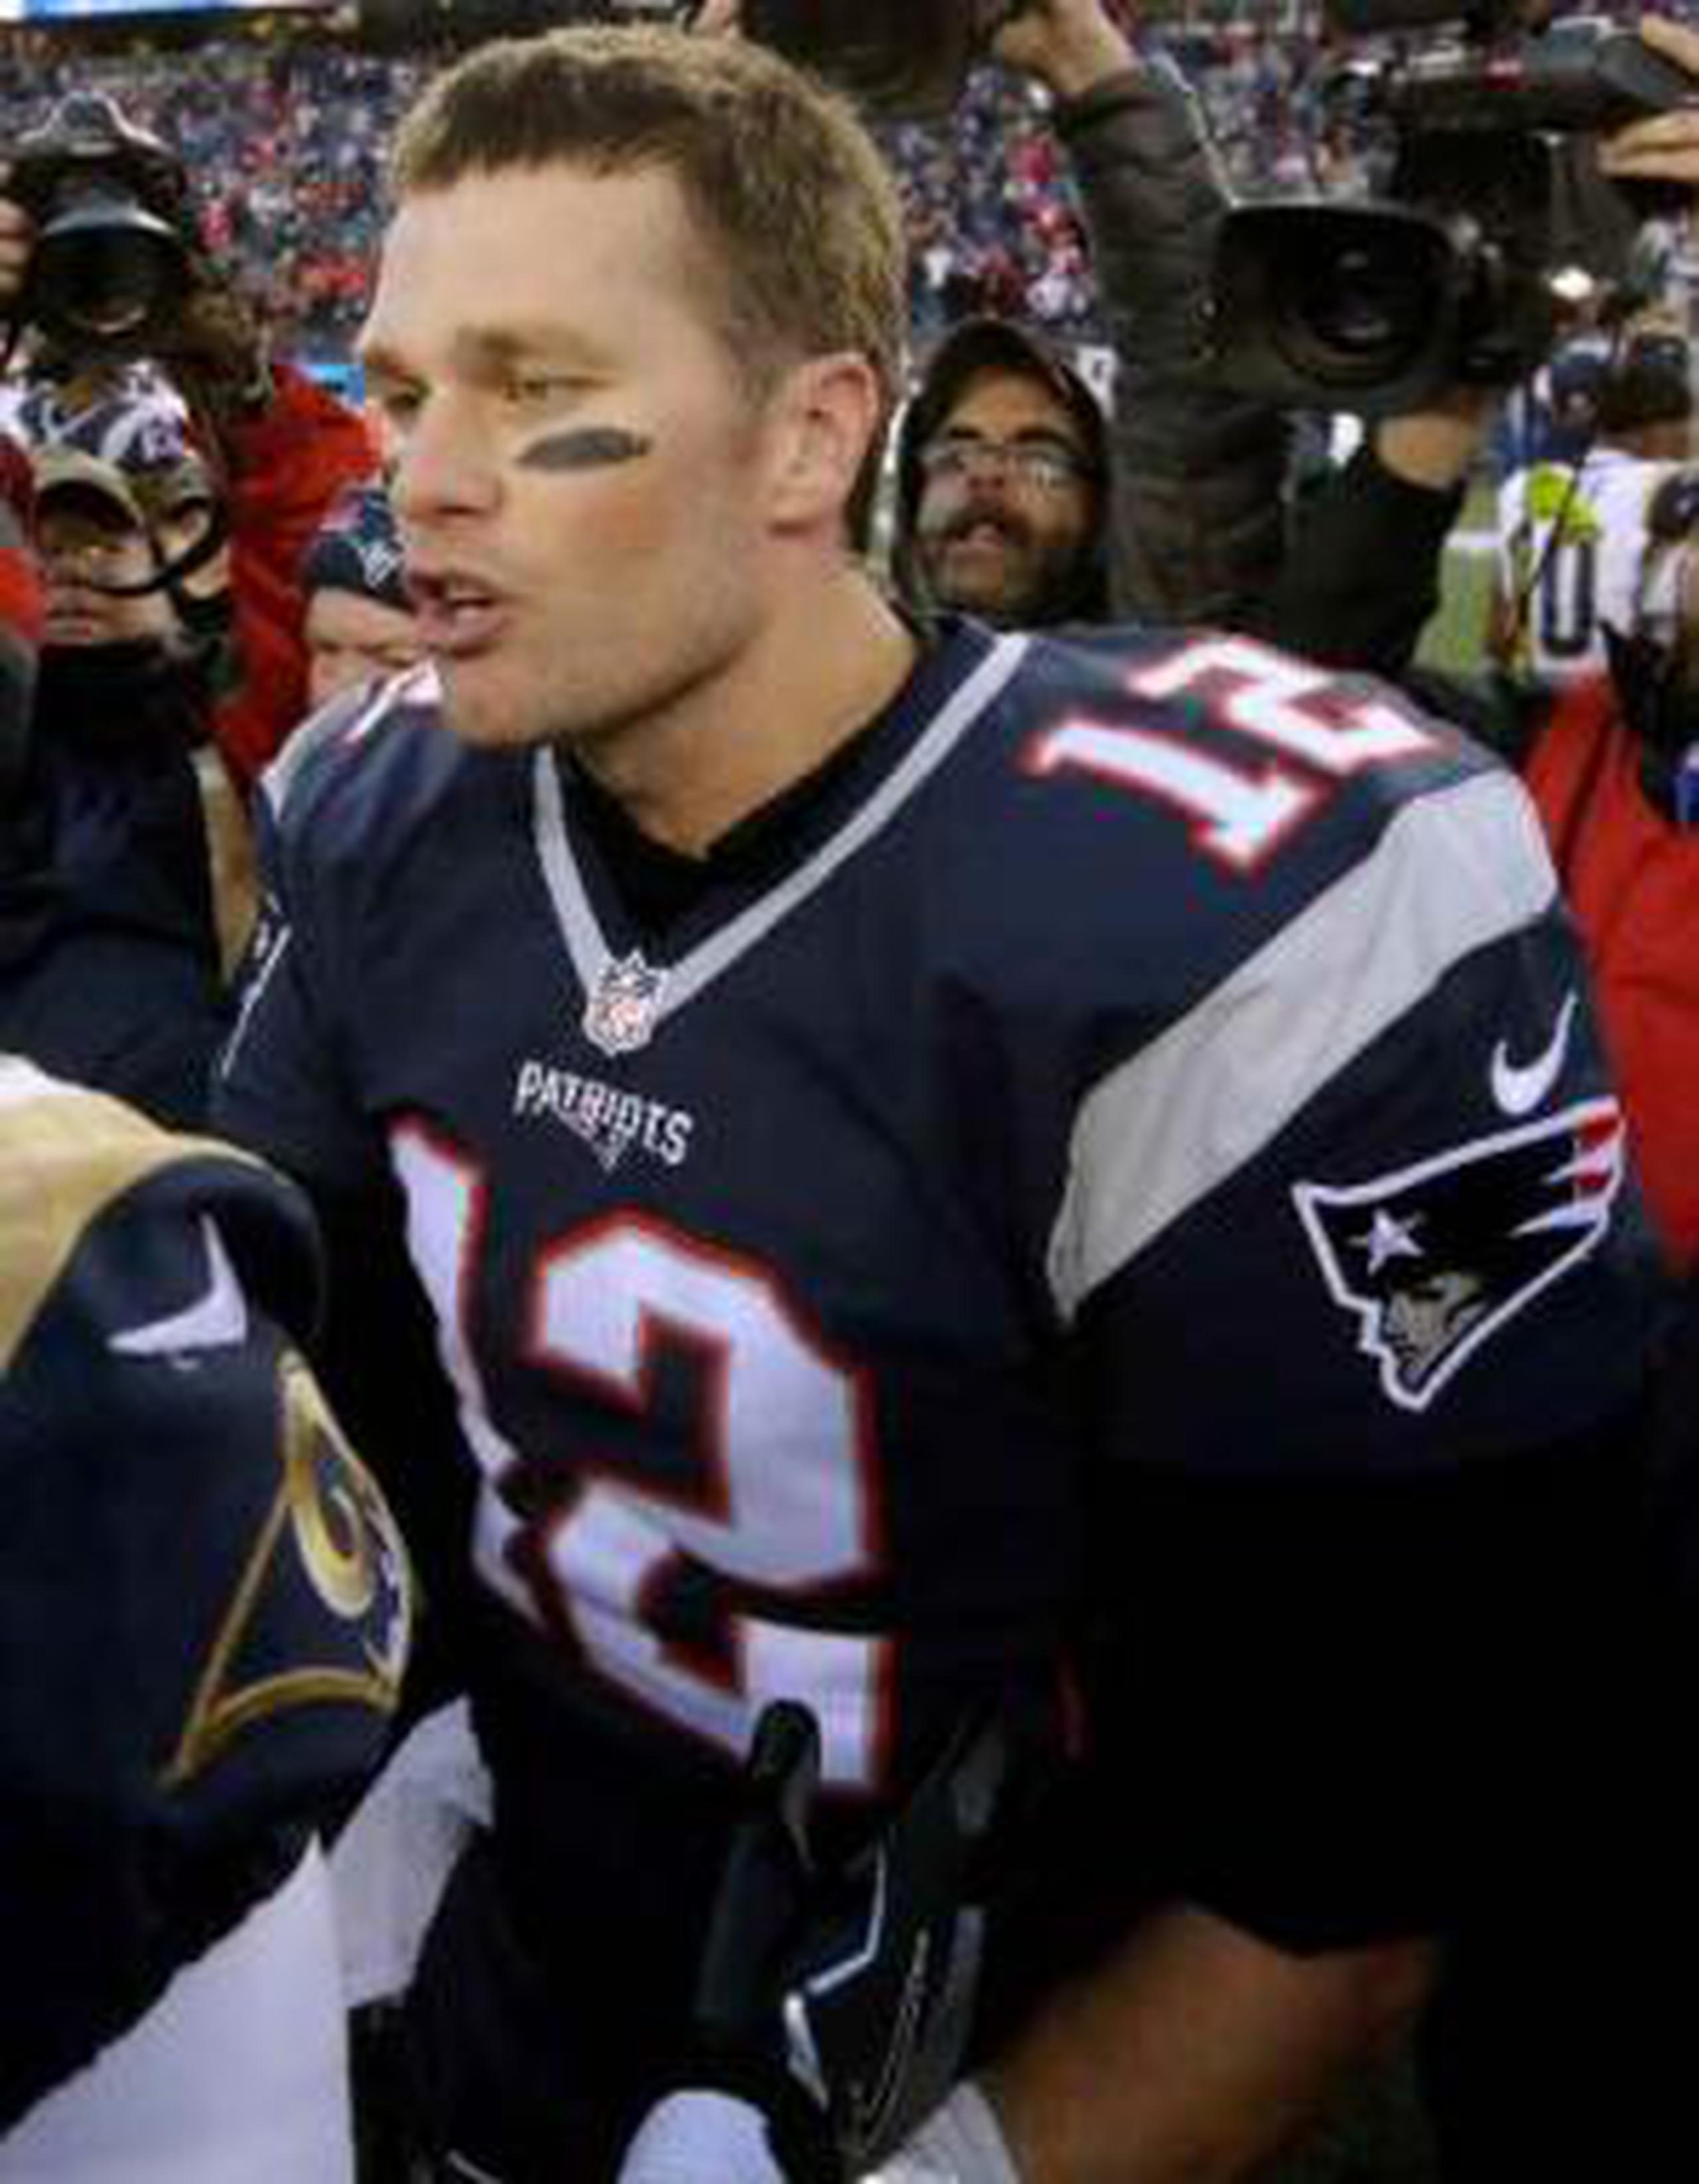 El quarterback Tom Brady buscará este domingo guiar a los Patriots a su sexto título del Super Bowl en su historia.